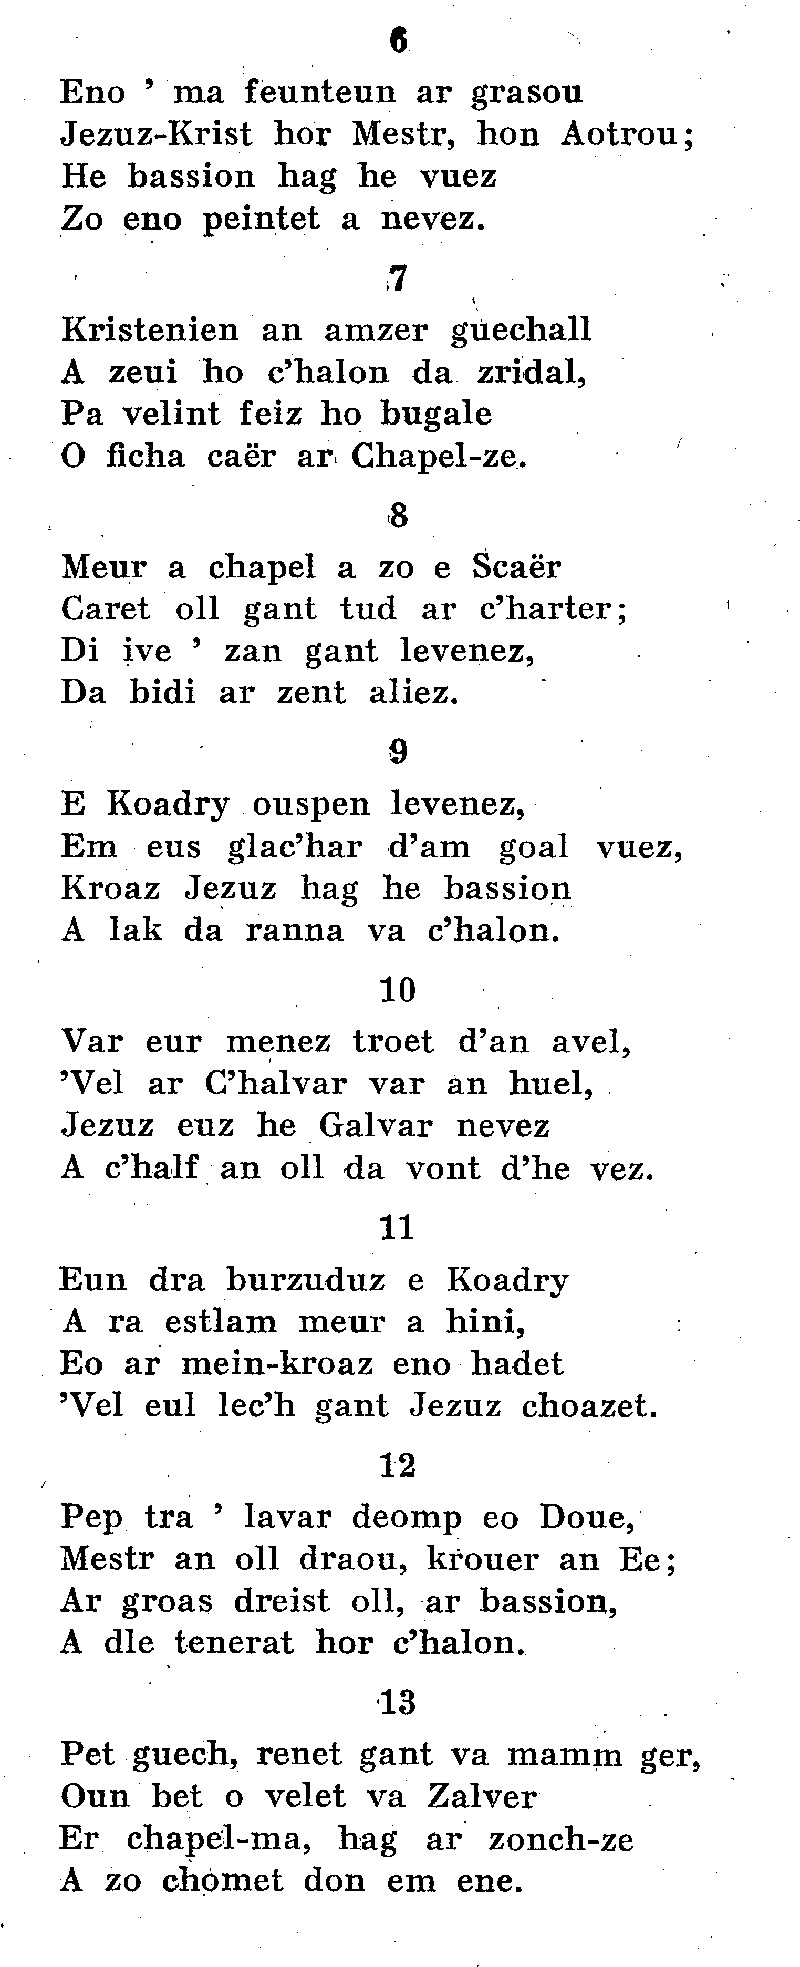 Scar-Coadry (Bretagne) : cantiques bretons.